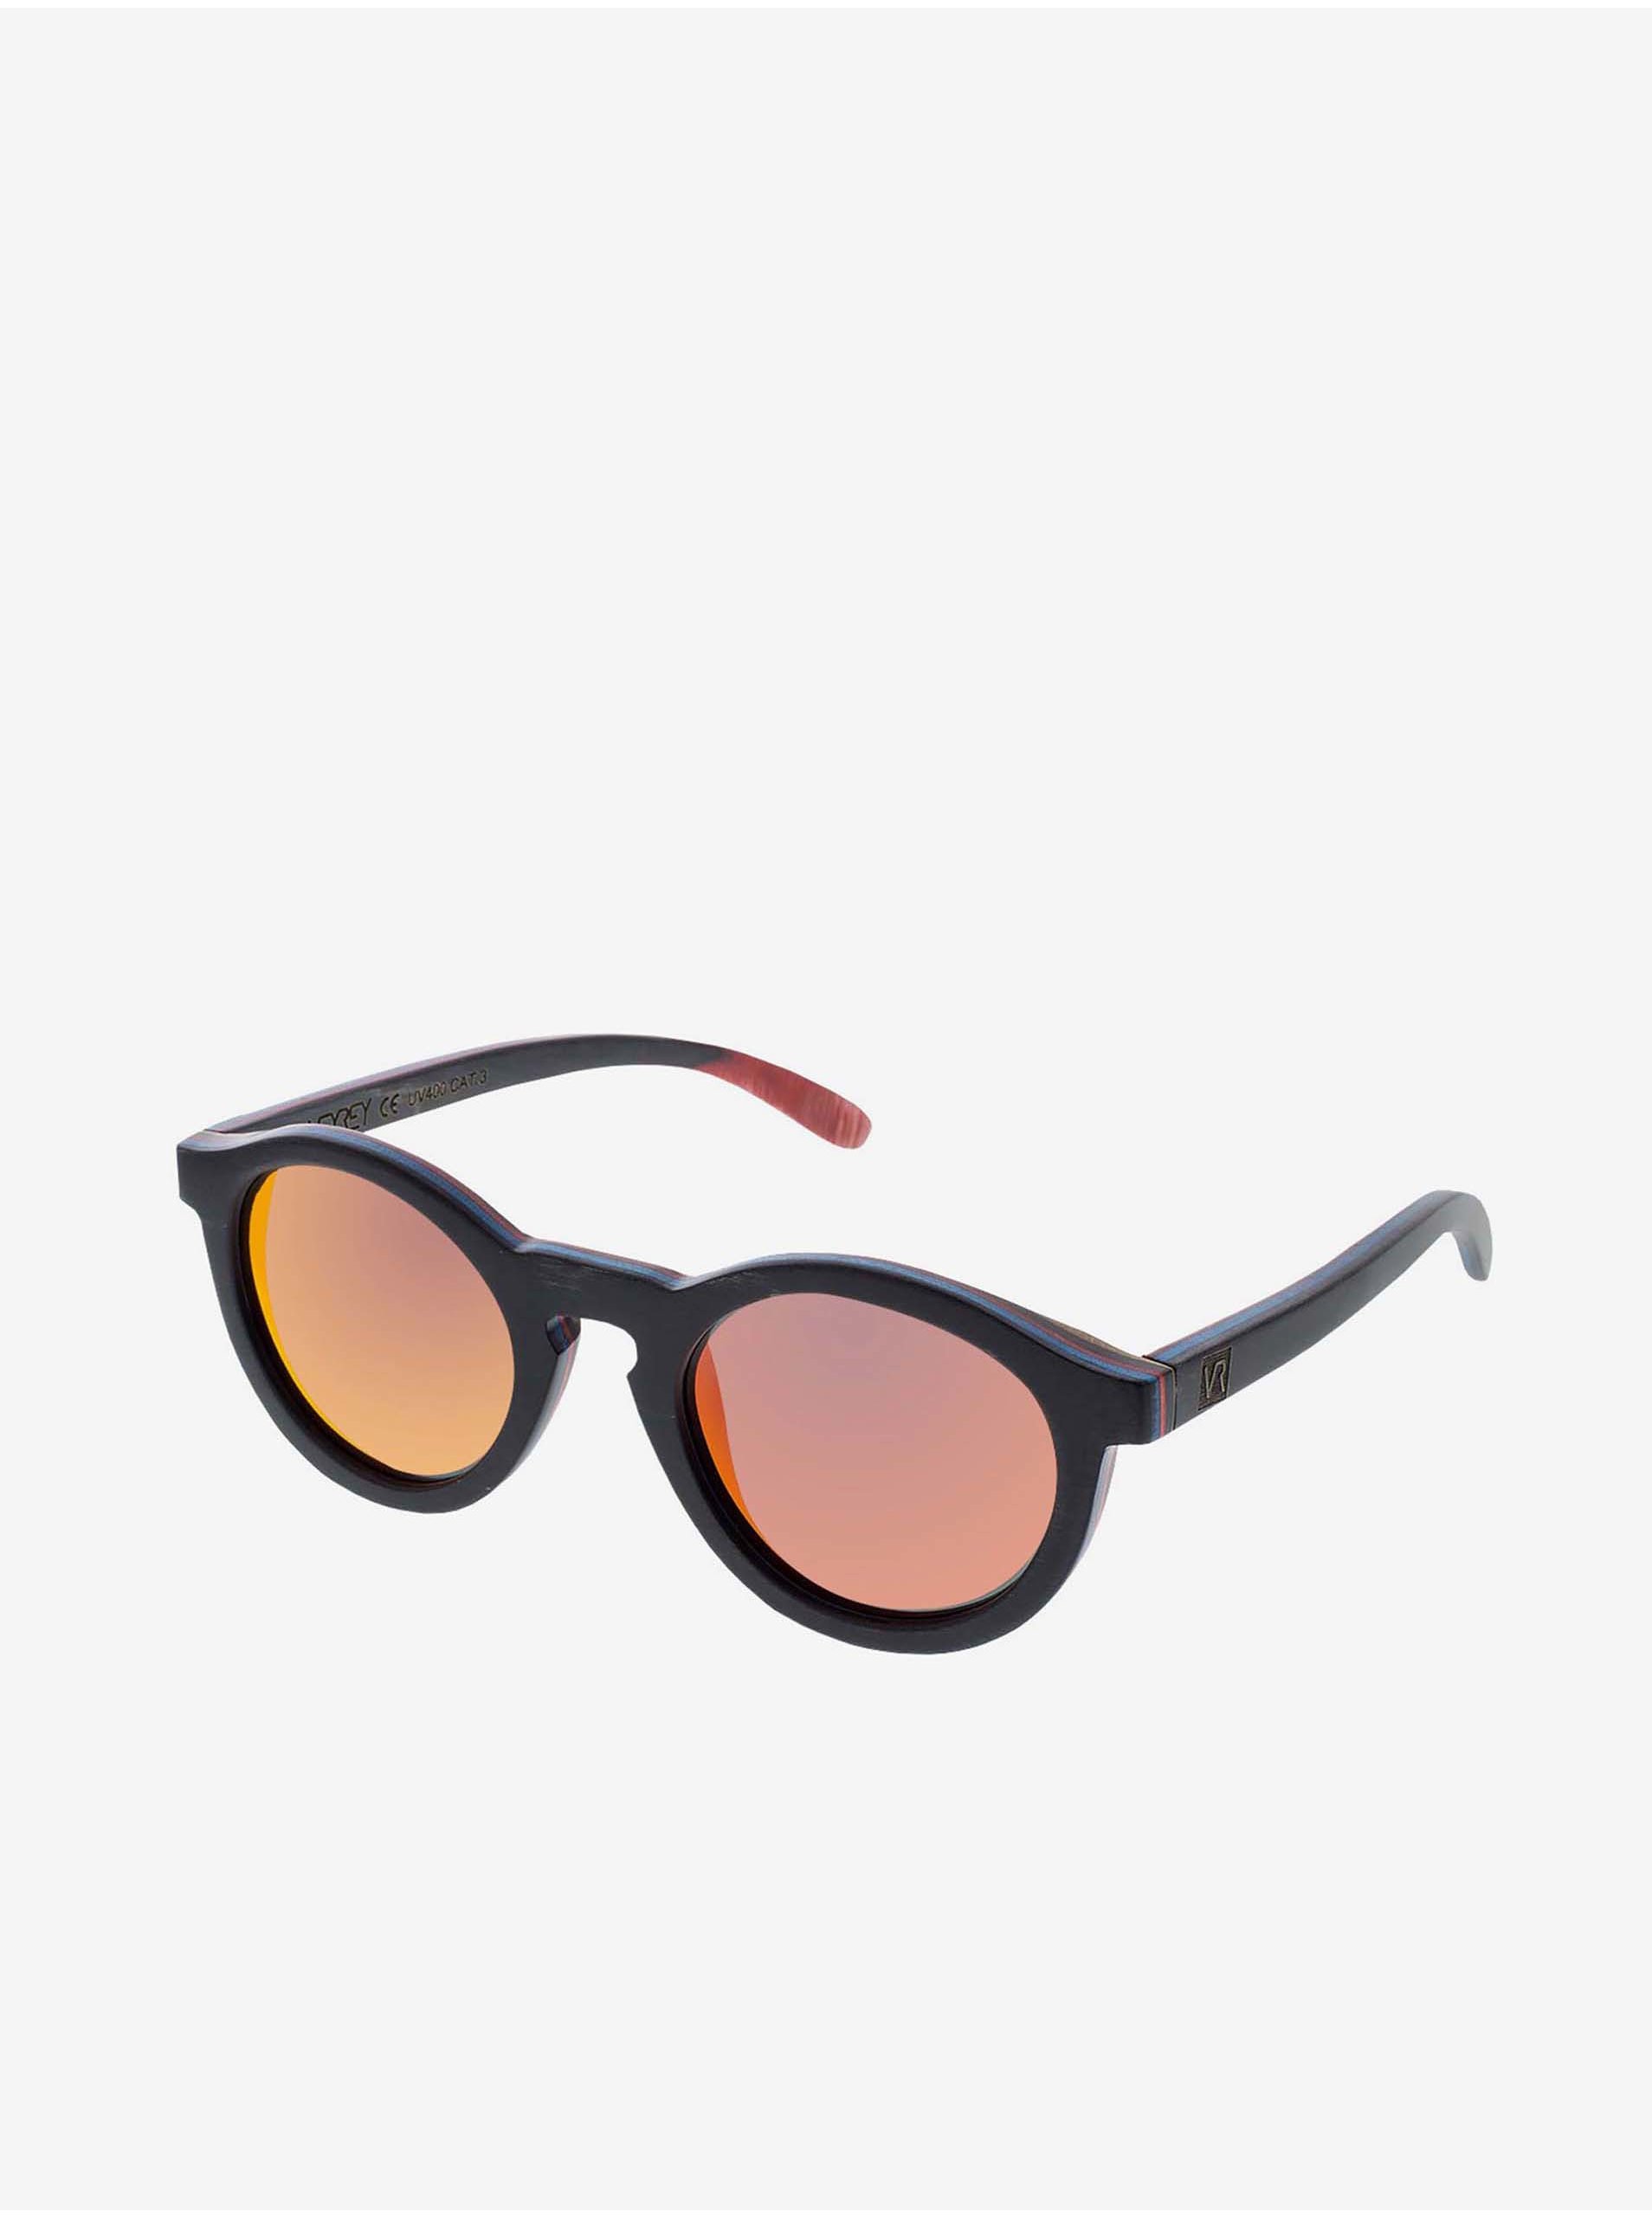 Lacno VeyRey Slnečné okuliare drevené polarizačné oválne Hornbeam červené sklá